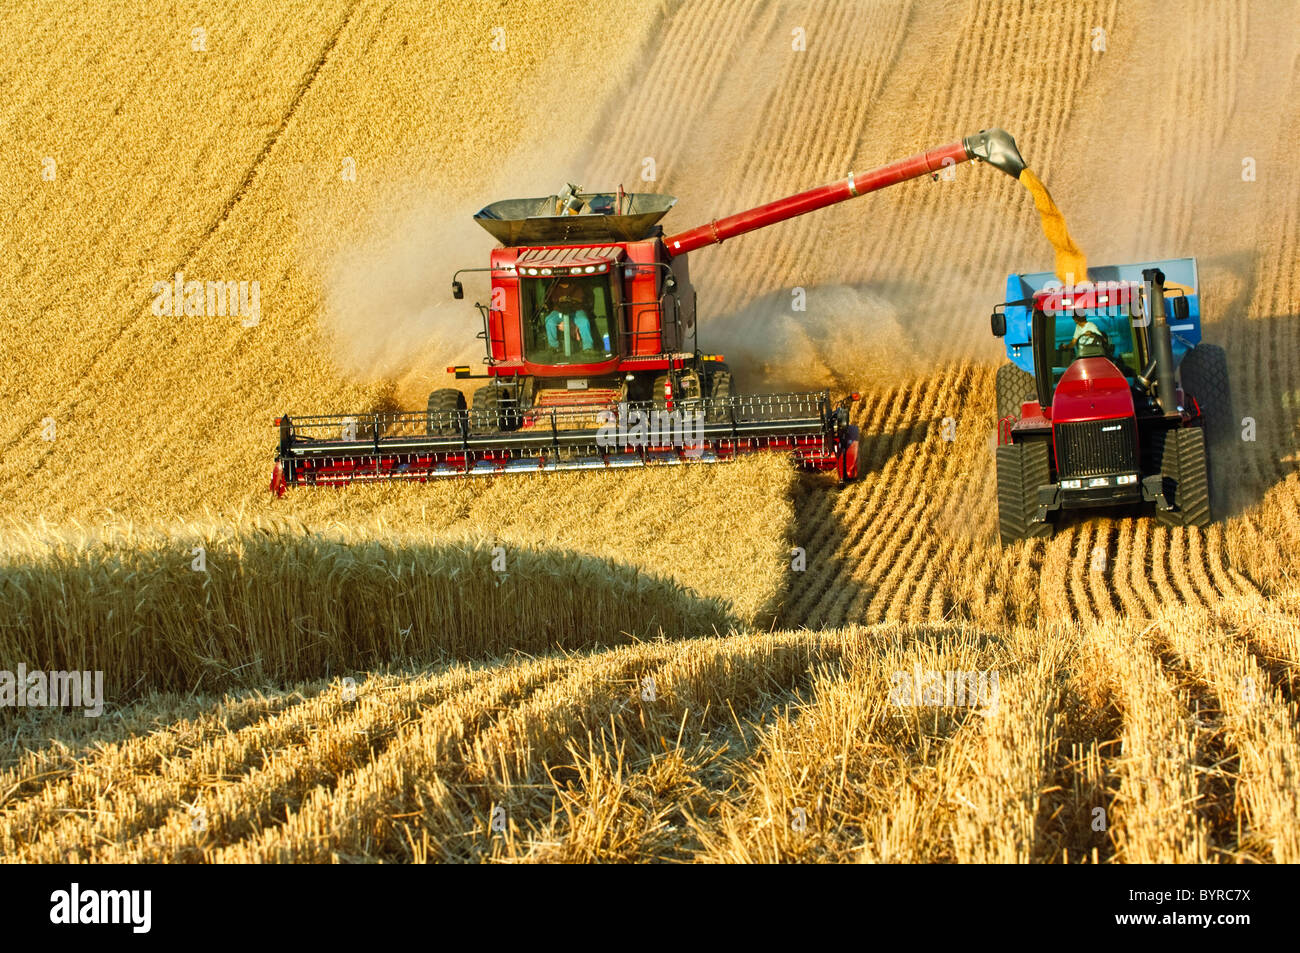 Case IH cosechadora cosecha trigo mientras se descarga "sobre la marcha" en un grano de un carro tirado por un tractor de orugas / Washington, Estados Unidos. Foto de stock